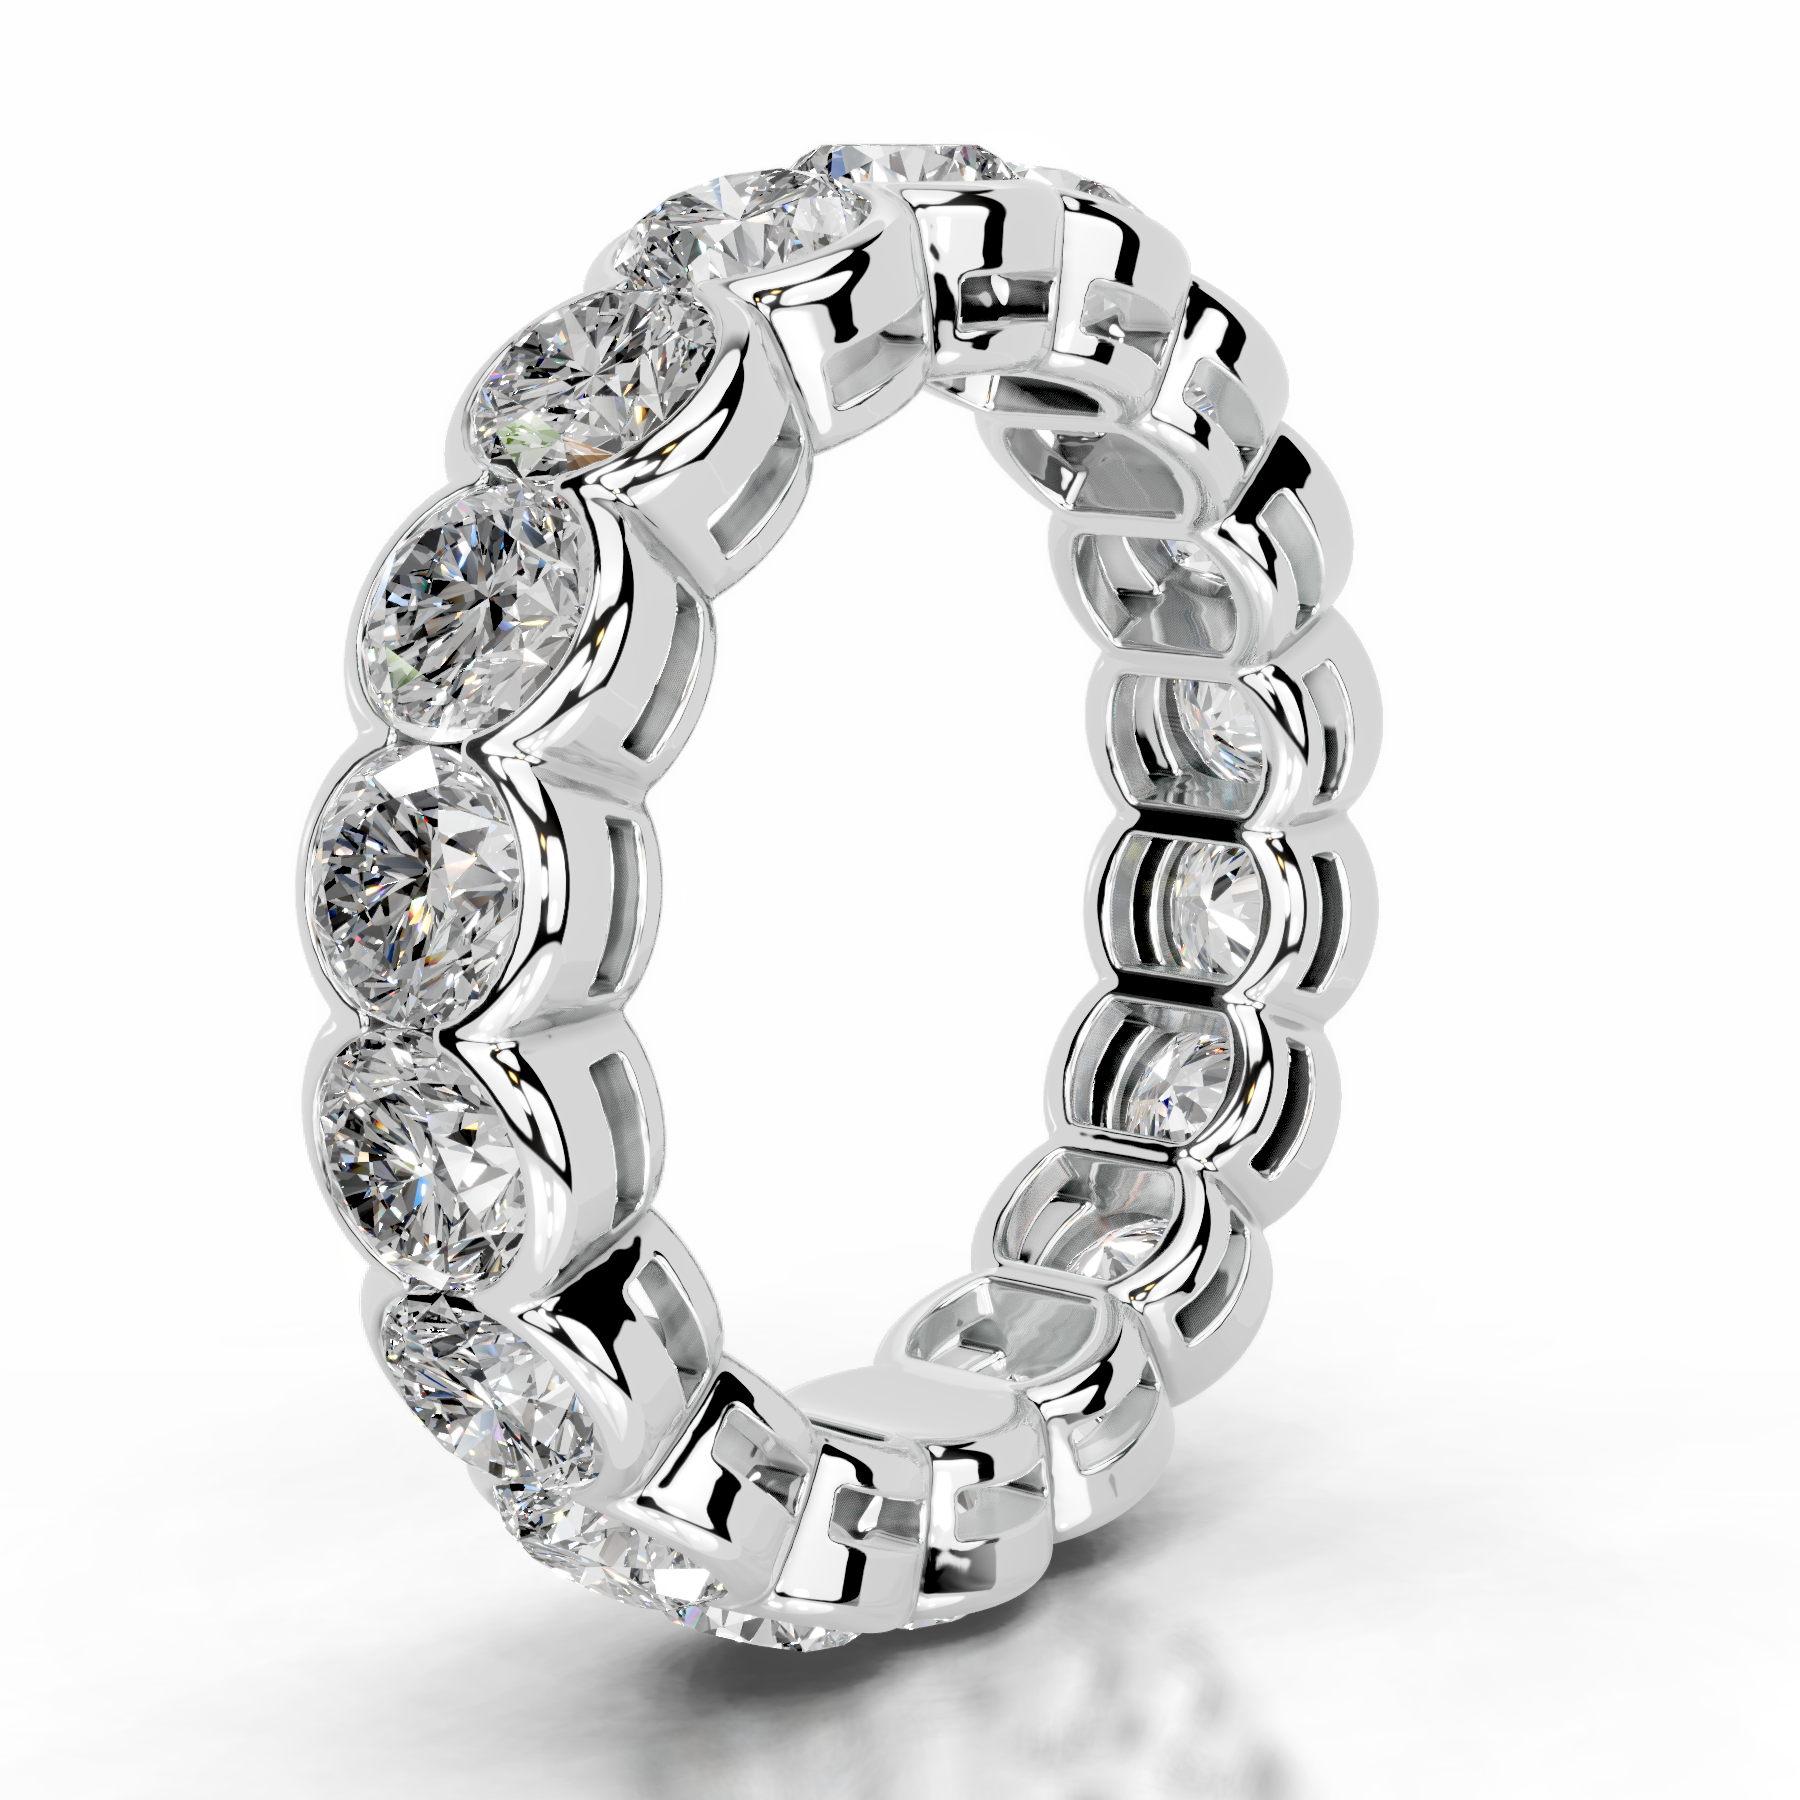 Velinda Diamond Wedding Ring   (4 Carat) -14K White Gold